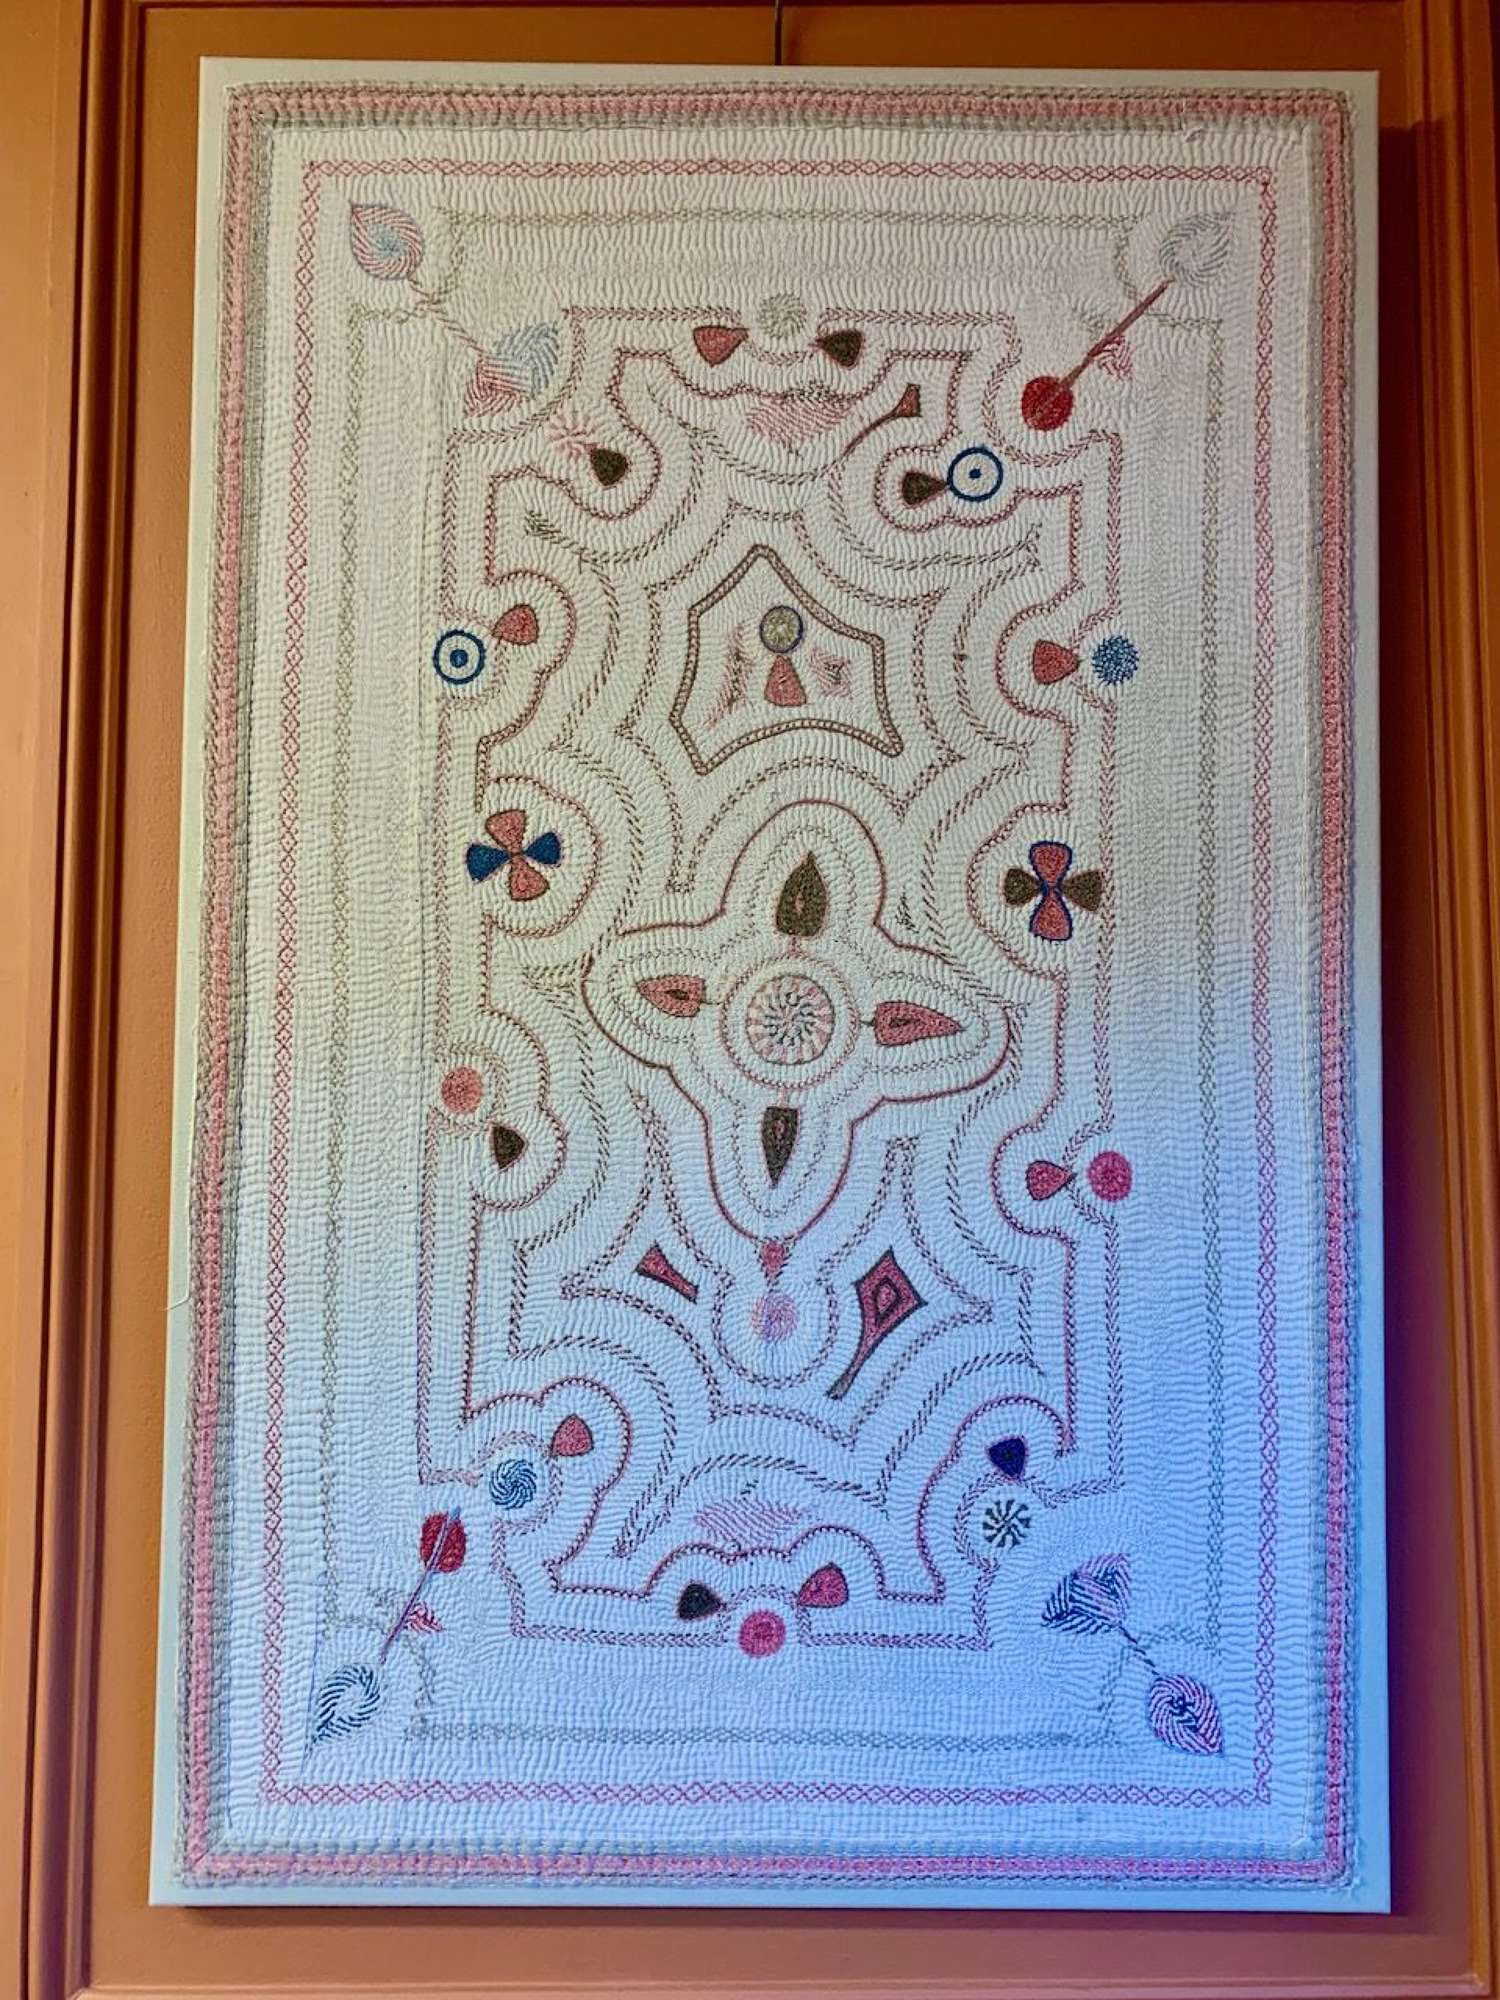 Framed vintage kantha quilt